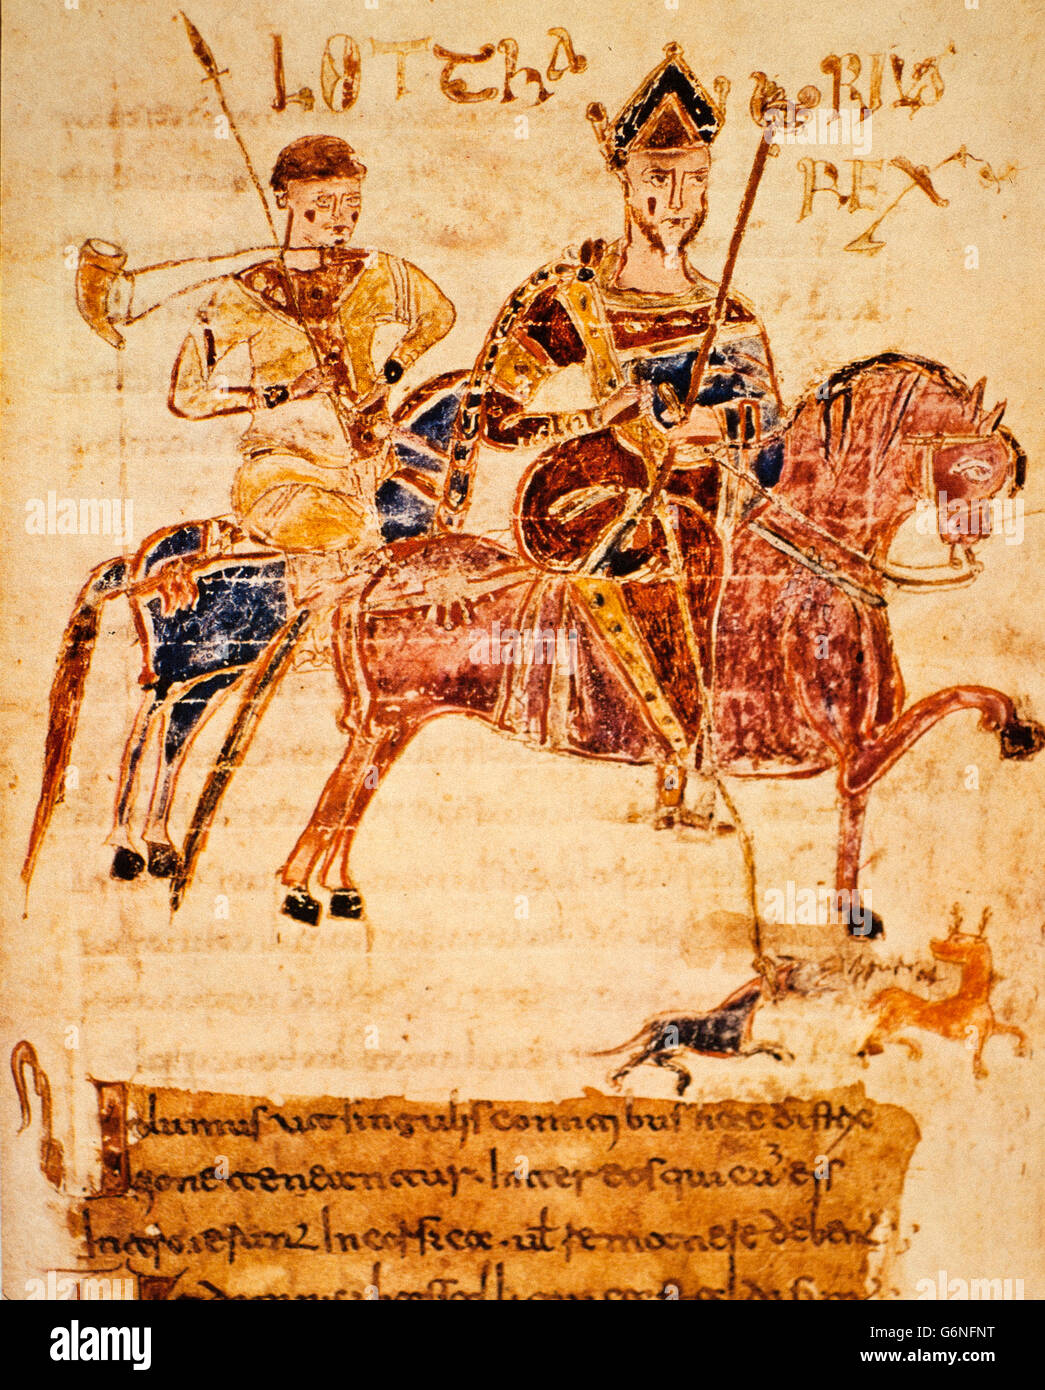 König Lothar auf der Jagd Codex legnum Langobardorum Capitularia Regum Francorum - 1005 Badia di Cava Stockfoto